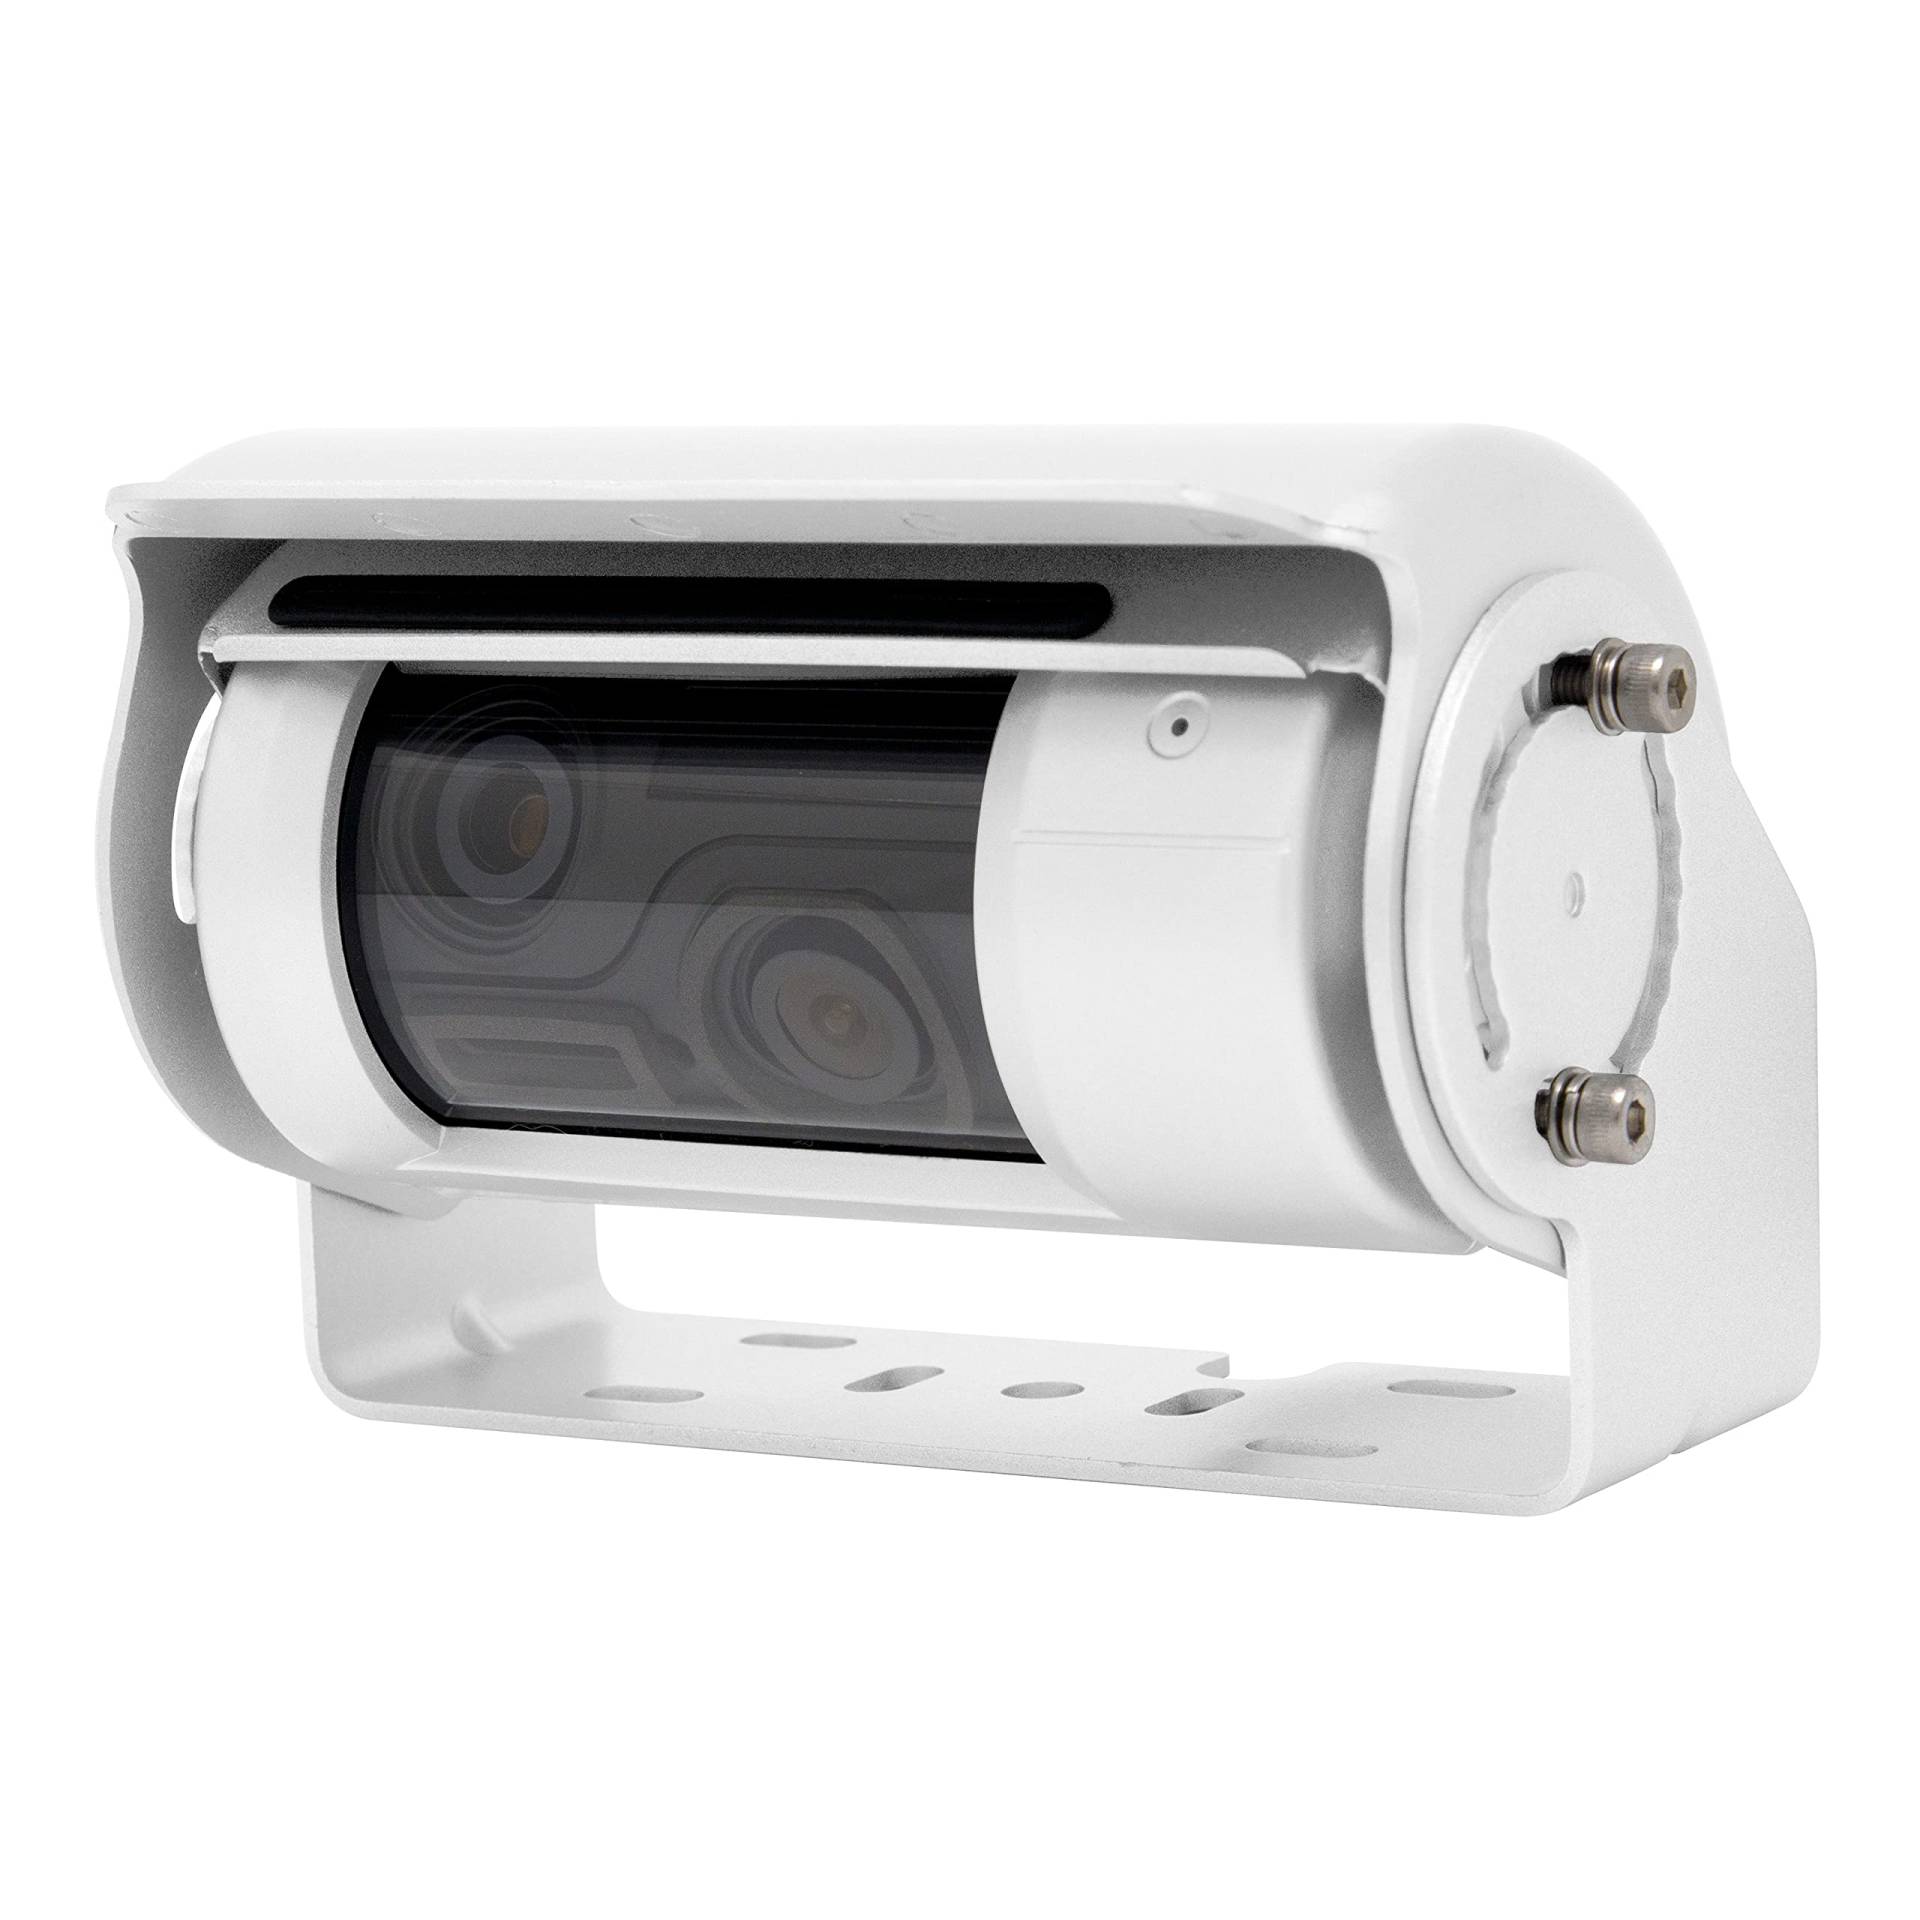 Shutter-Doppel-Rückfahrkamera RAV-MD2 in weiß von CARGUARD Systems mit 700TVL für Navis, Moniceiver und Monitore mit 2 Kameraeingängen, 150° und 60°, 9-32V, PAL von CARGUARD SYSTEMS